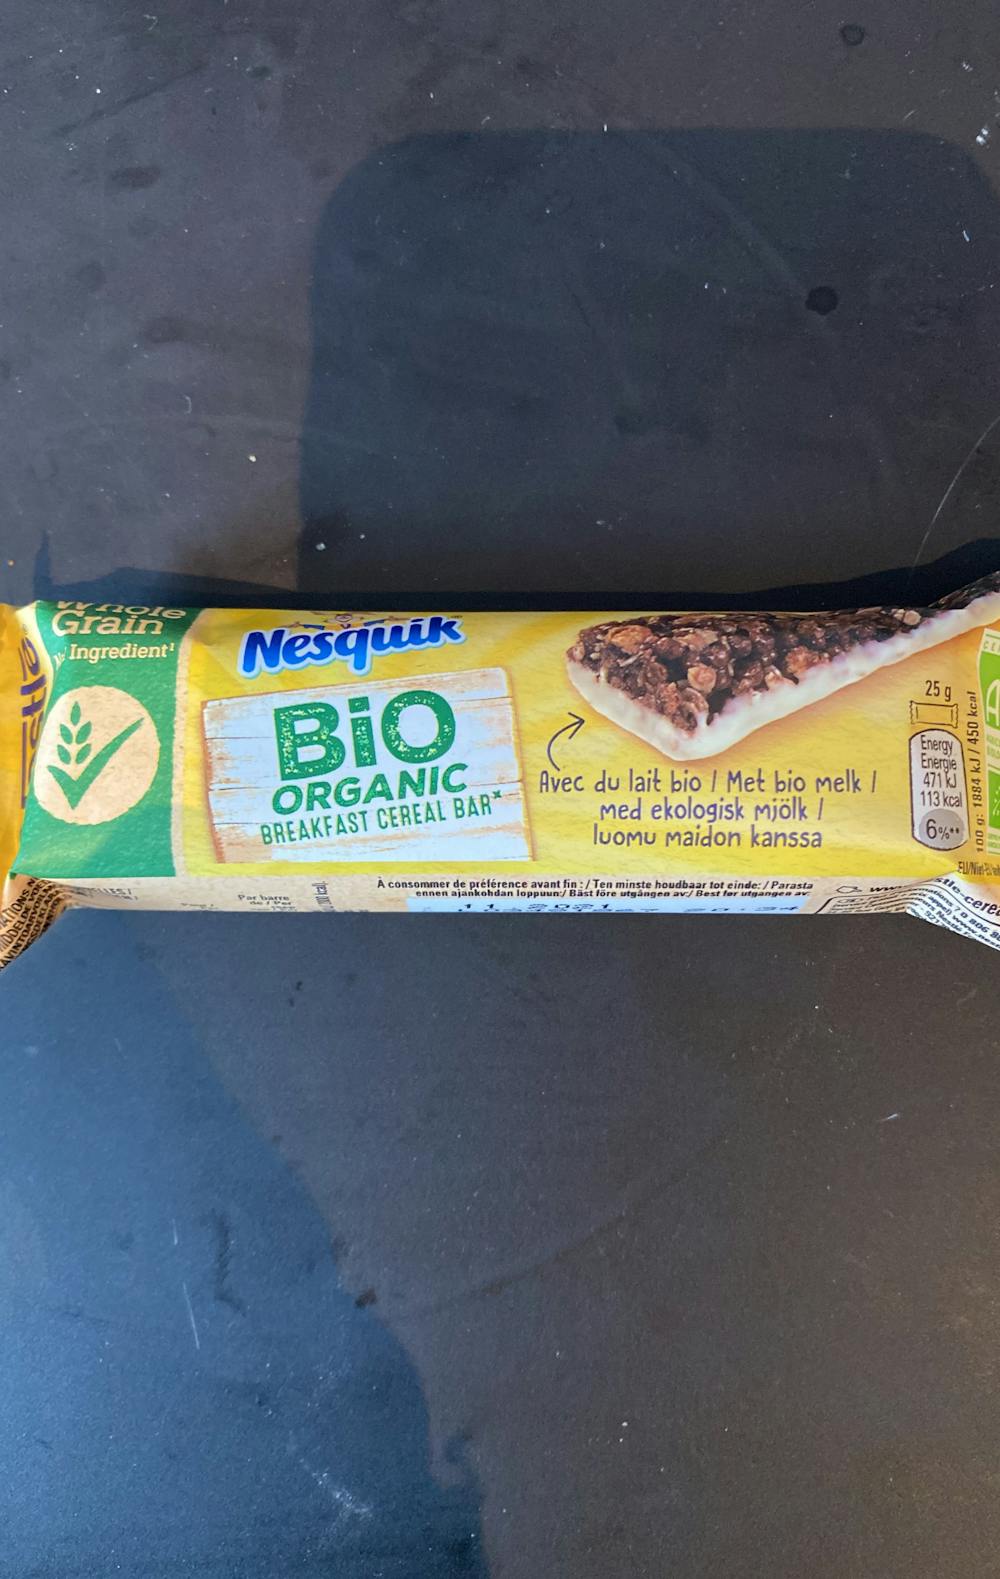 Bio organic breakfast cereal bar, Nesquik